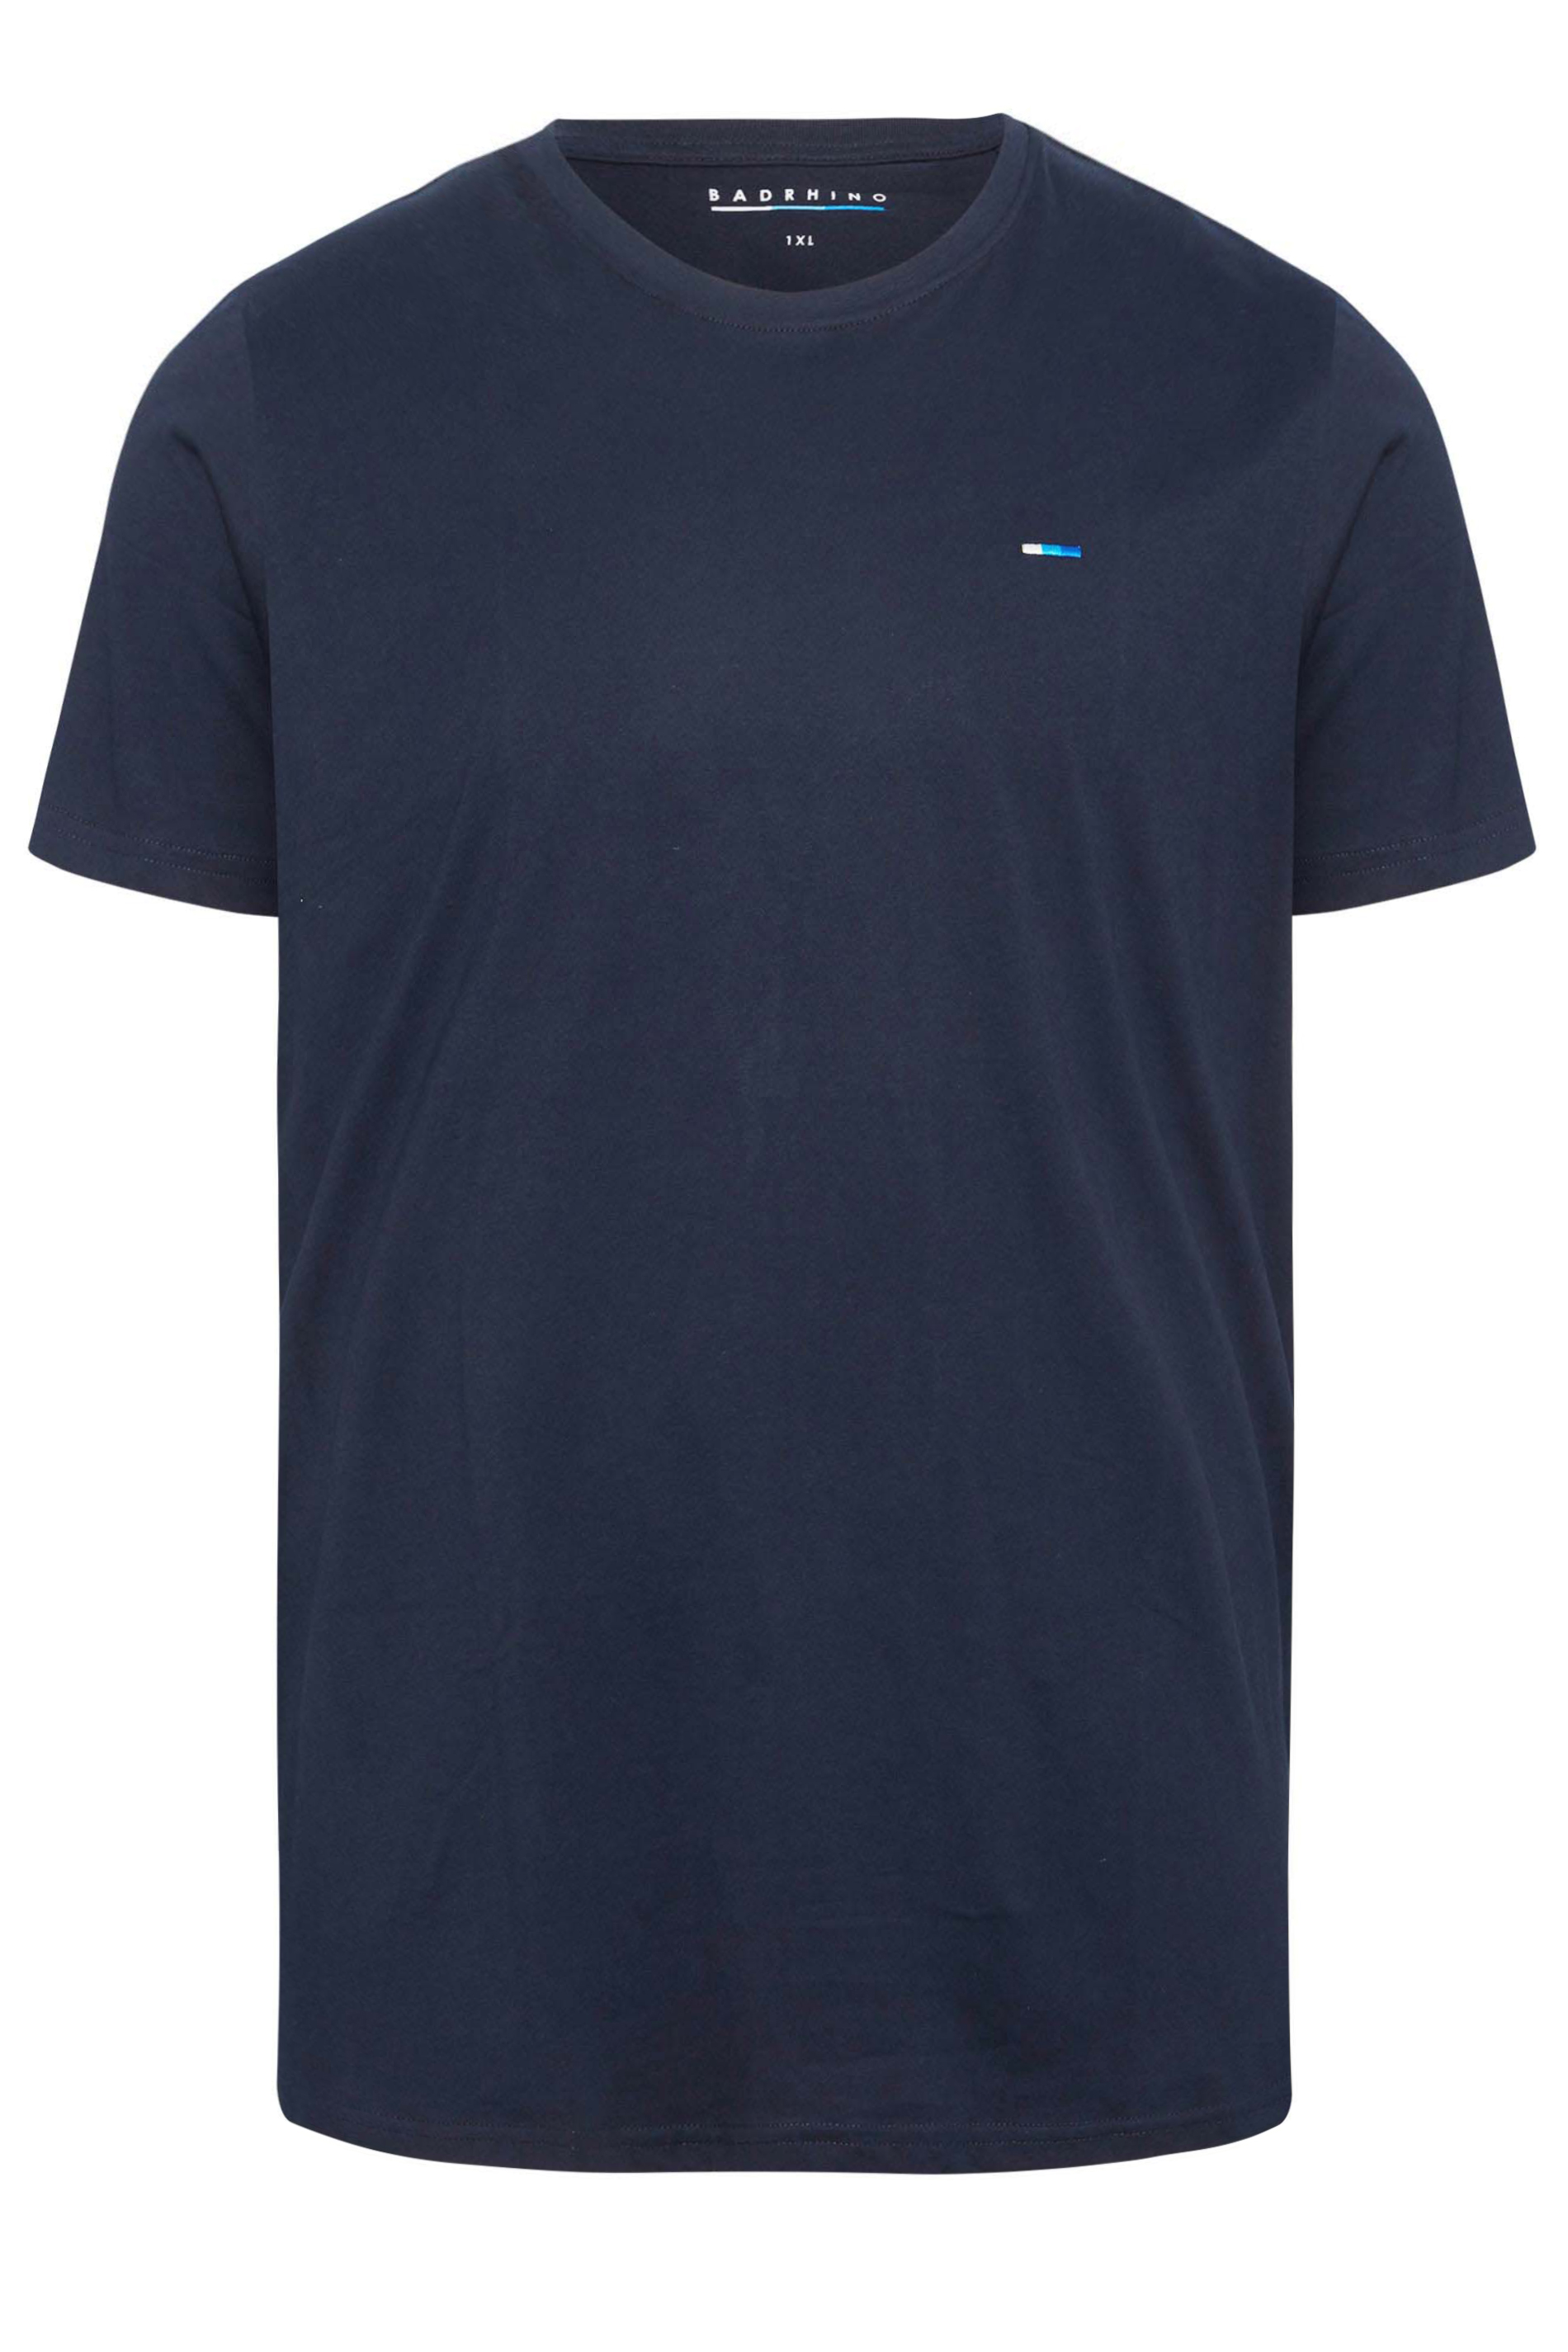 BadRhino Navy Blue Core T-Shirt | BadRhino 3